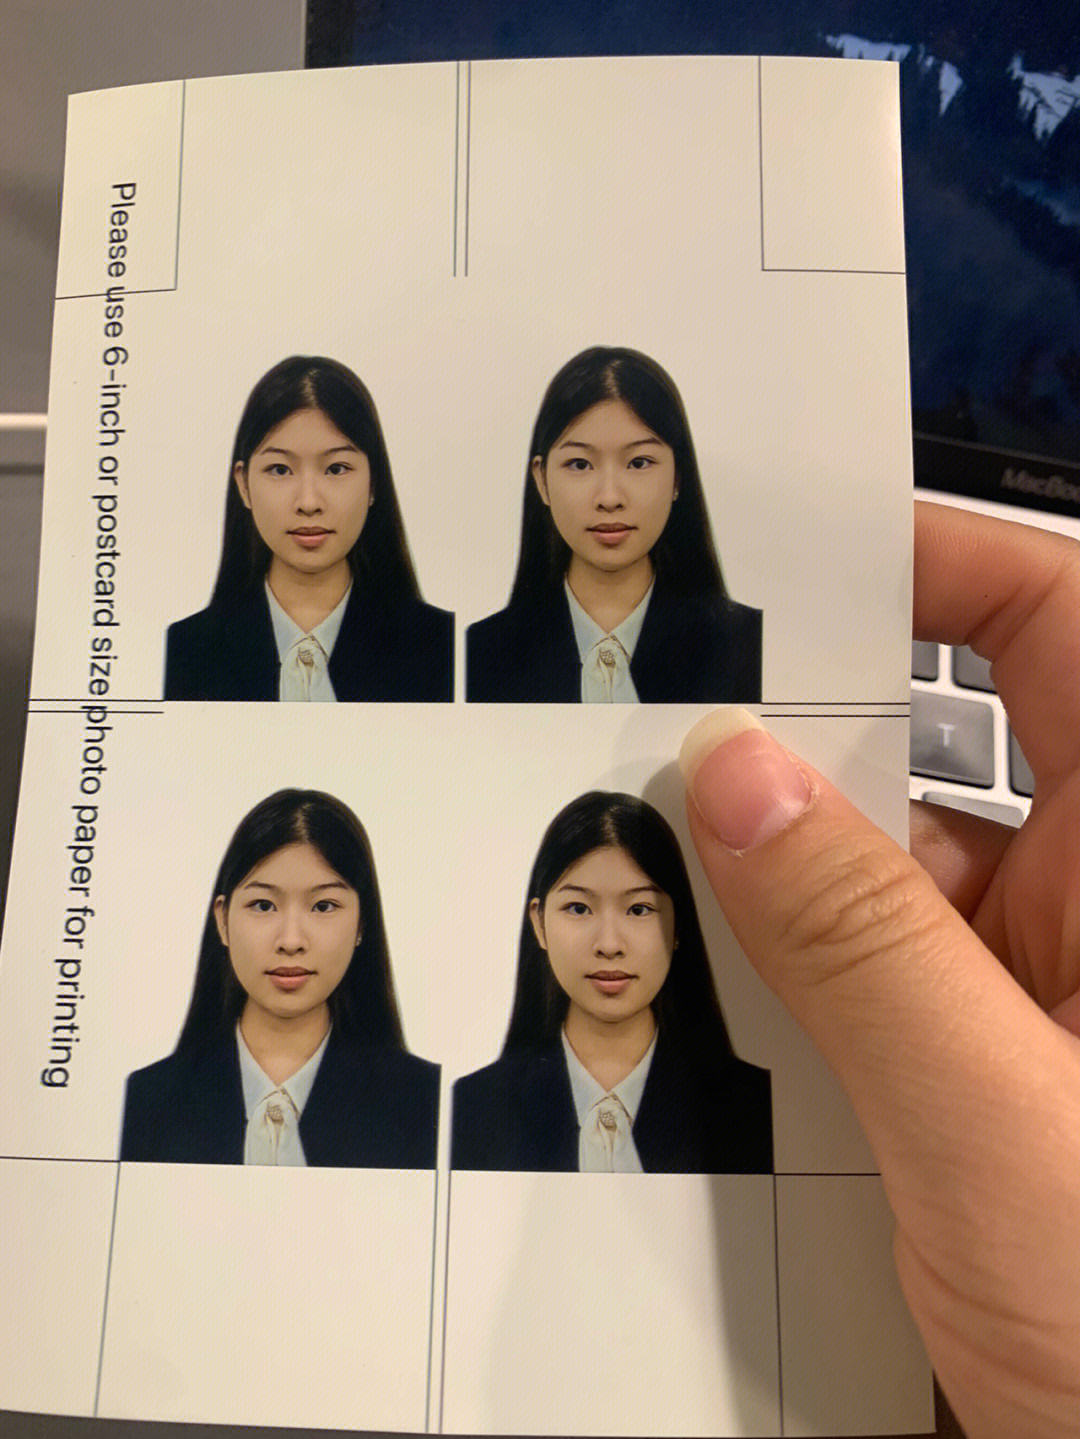 在美国新换了护照,实在是太喜欢这个照片啦,赶紧来分享一下自制证件照